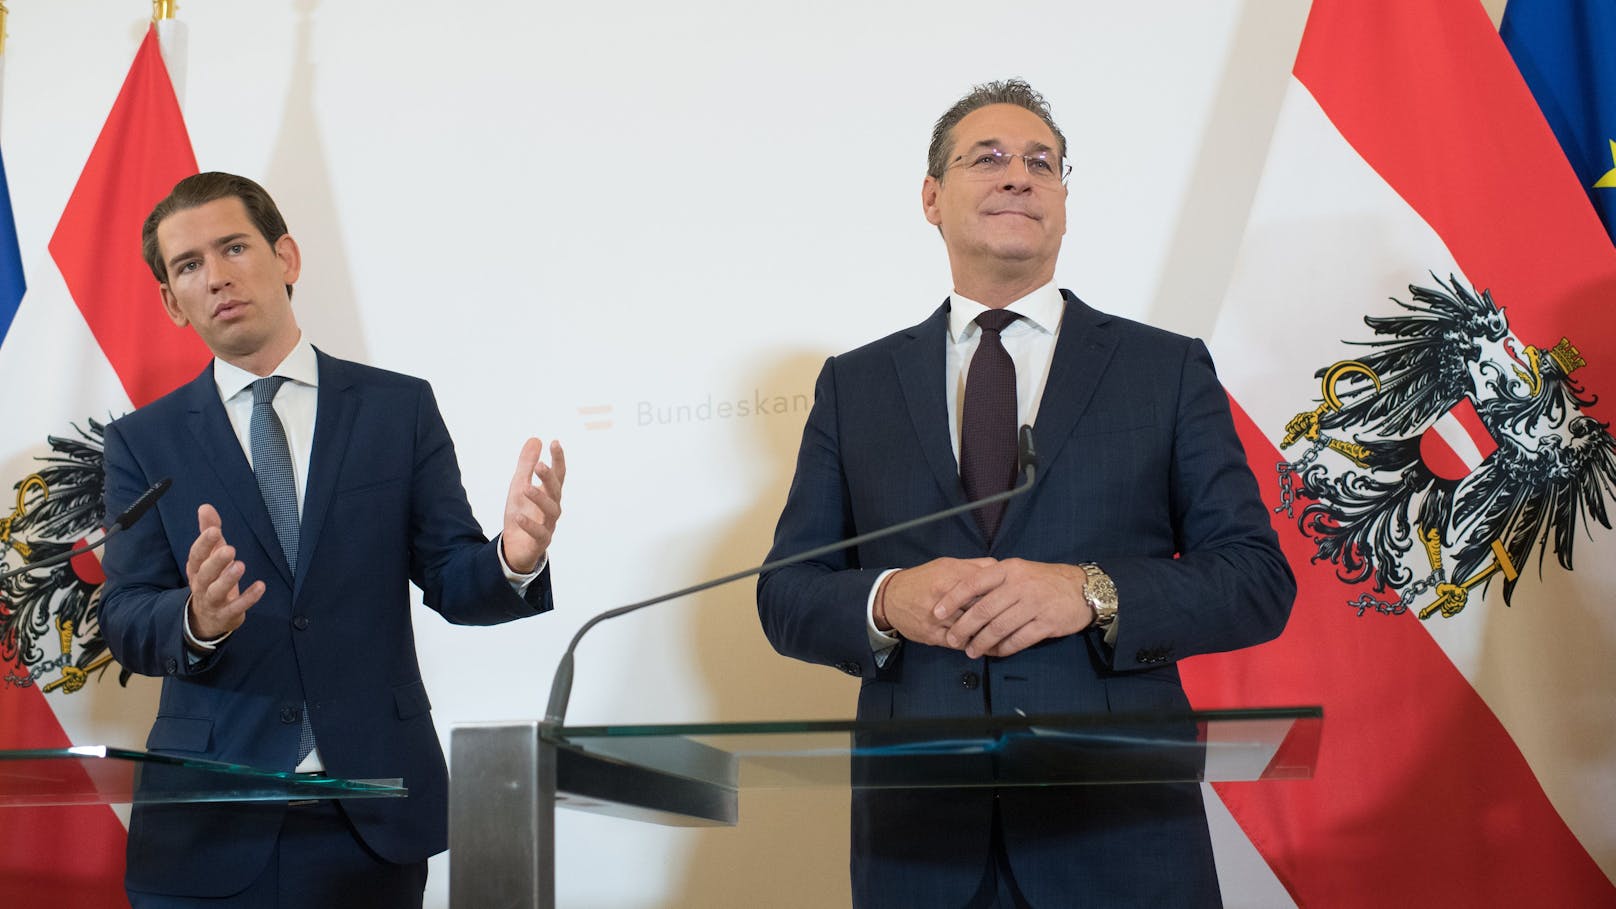 Bundeskanzler Kurz und Ex-Vizekanzler Strache. Nach dem Ibiza-Video folgte das Aus der ÖVP-FPÖ-Koalition.